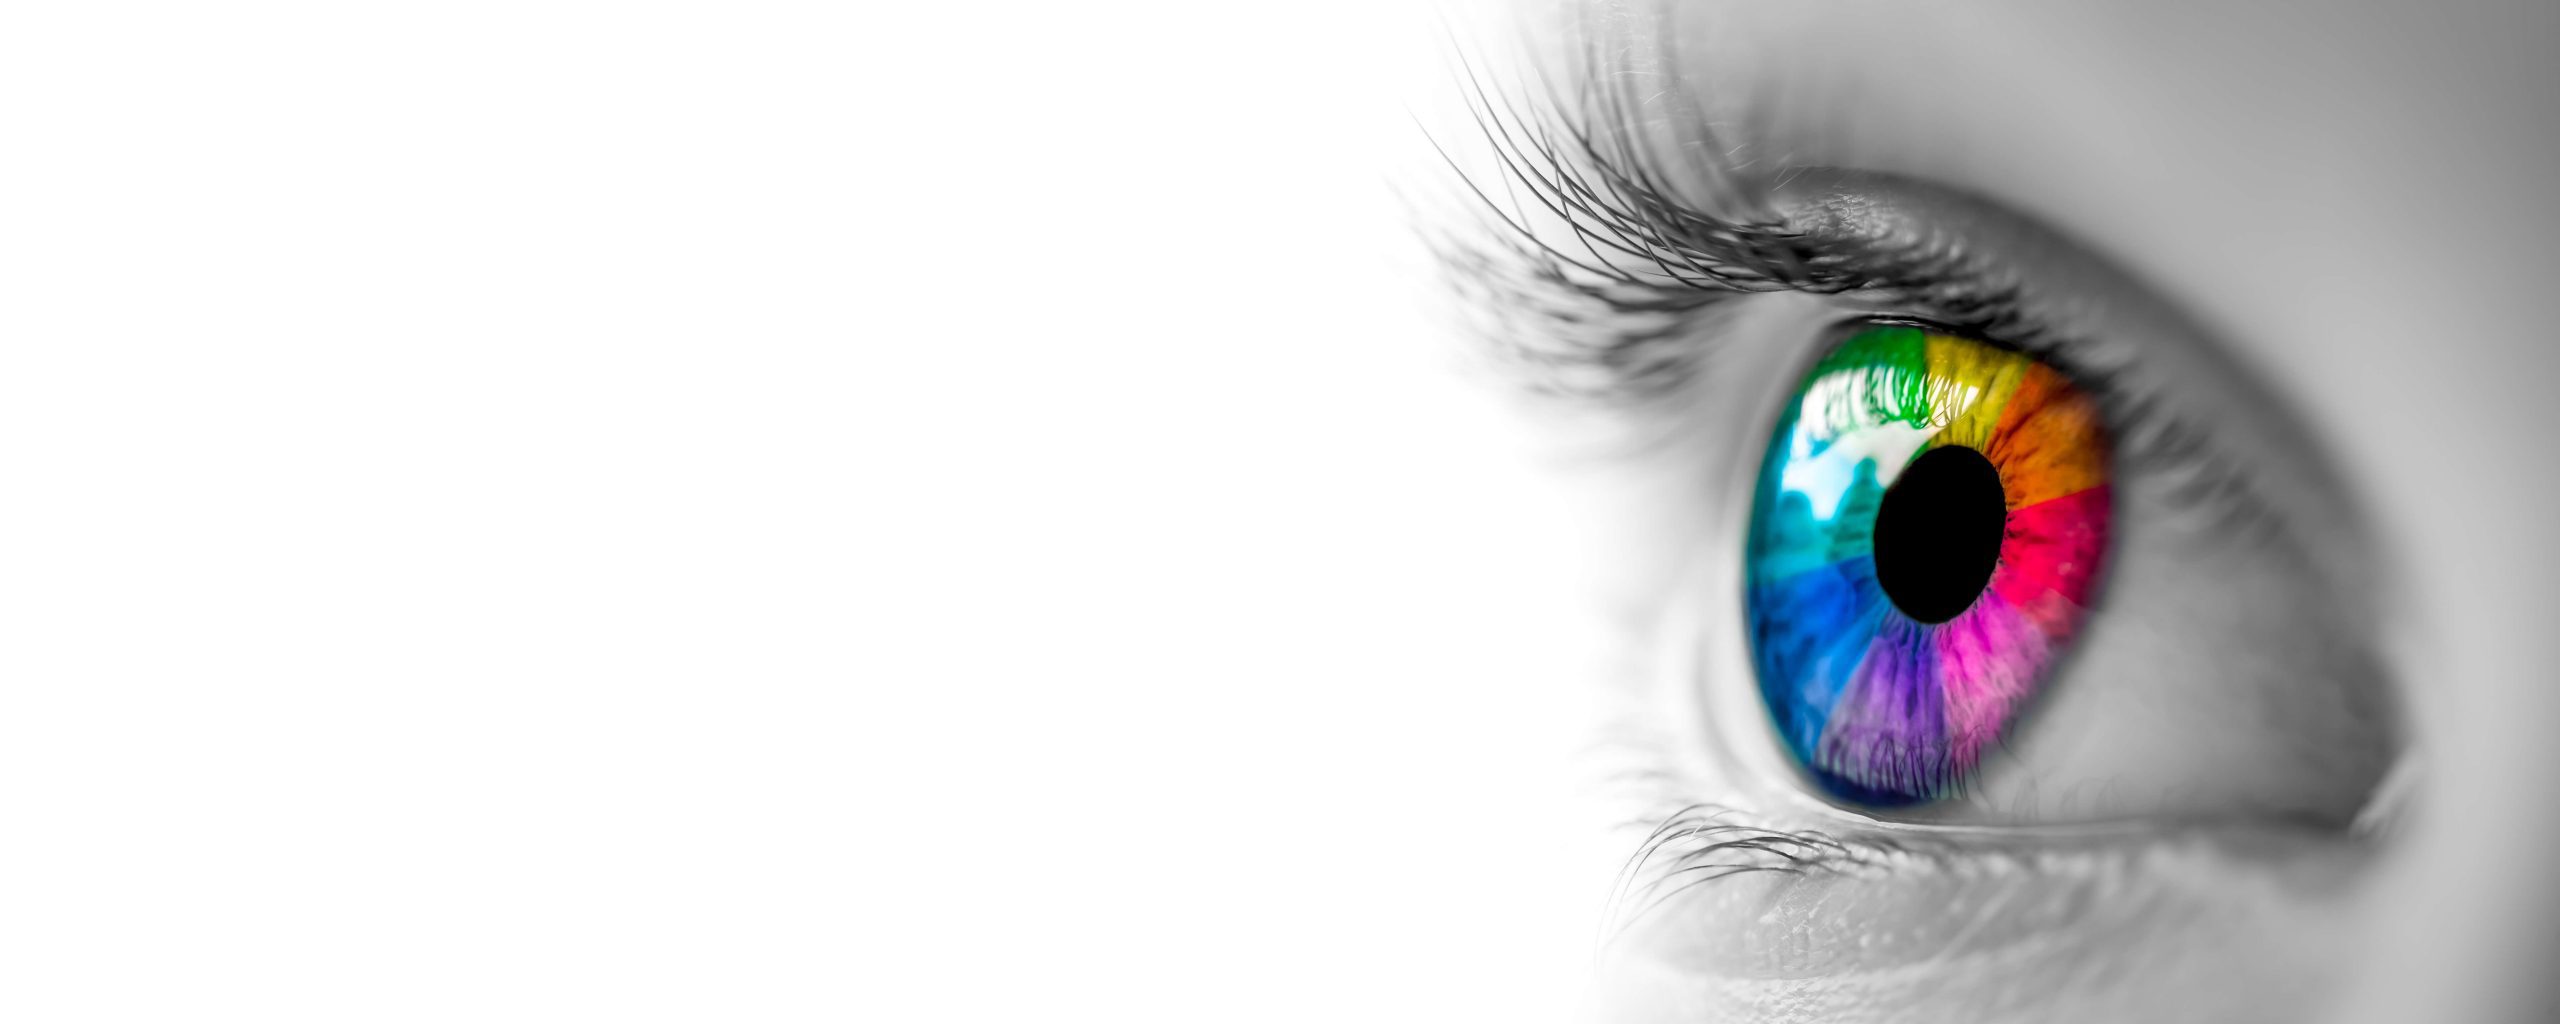 oftalmologie curs2-fiziologia vederii